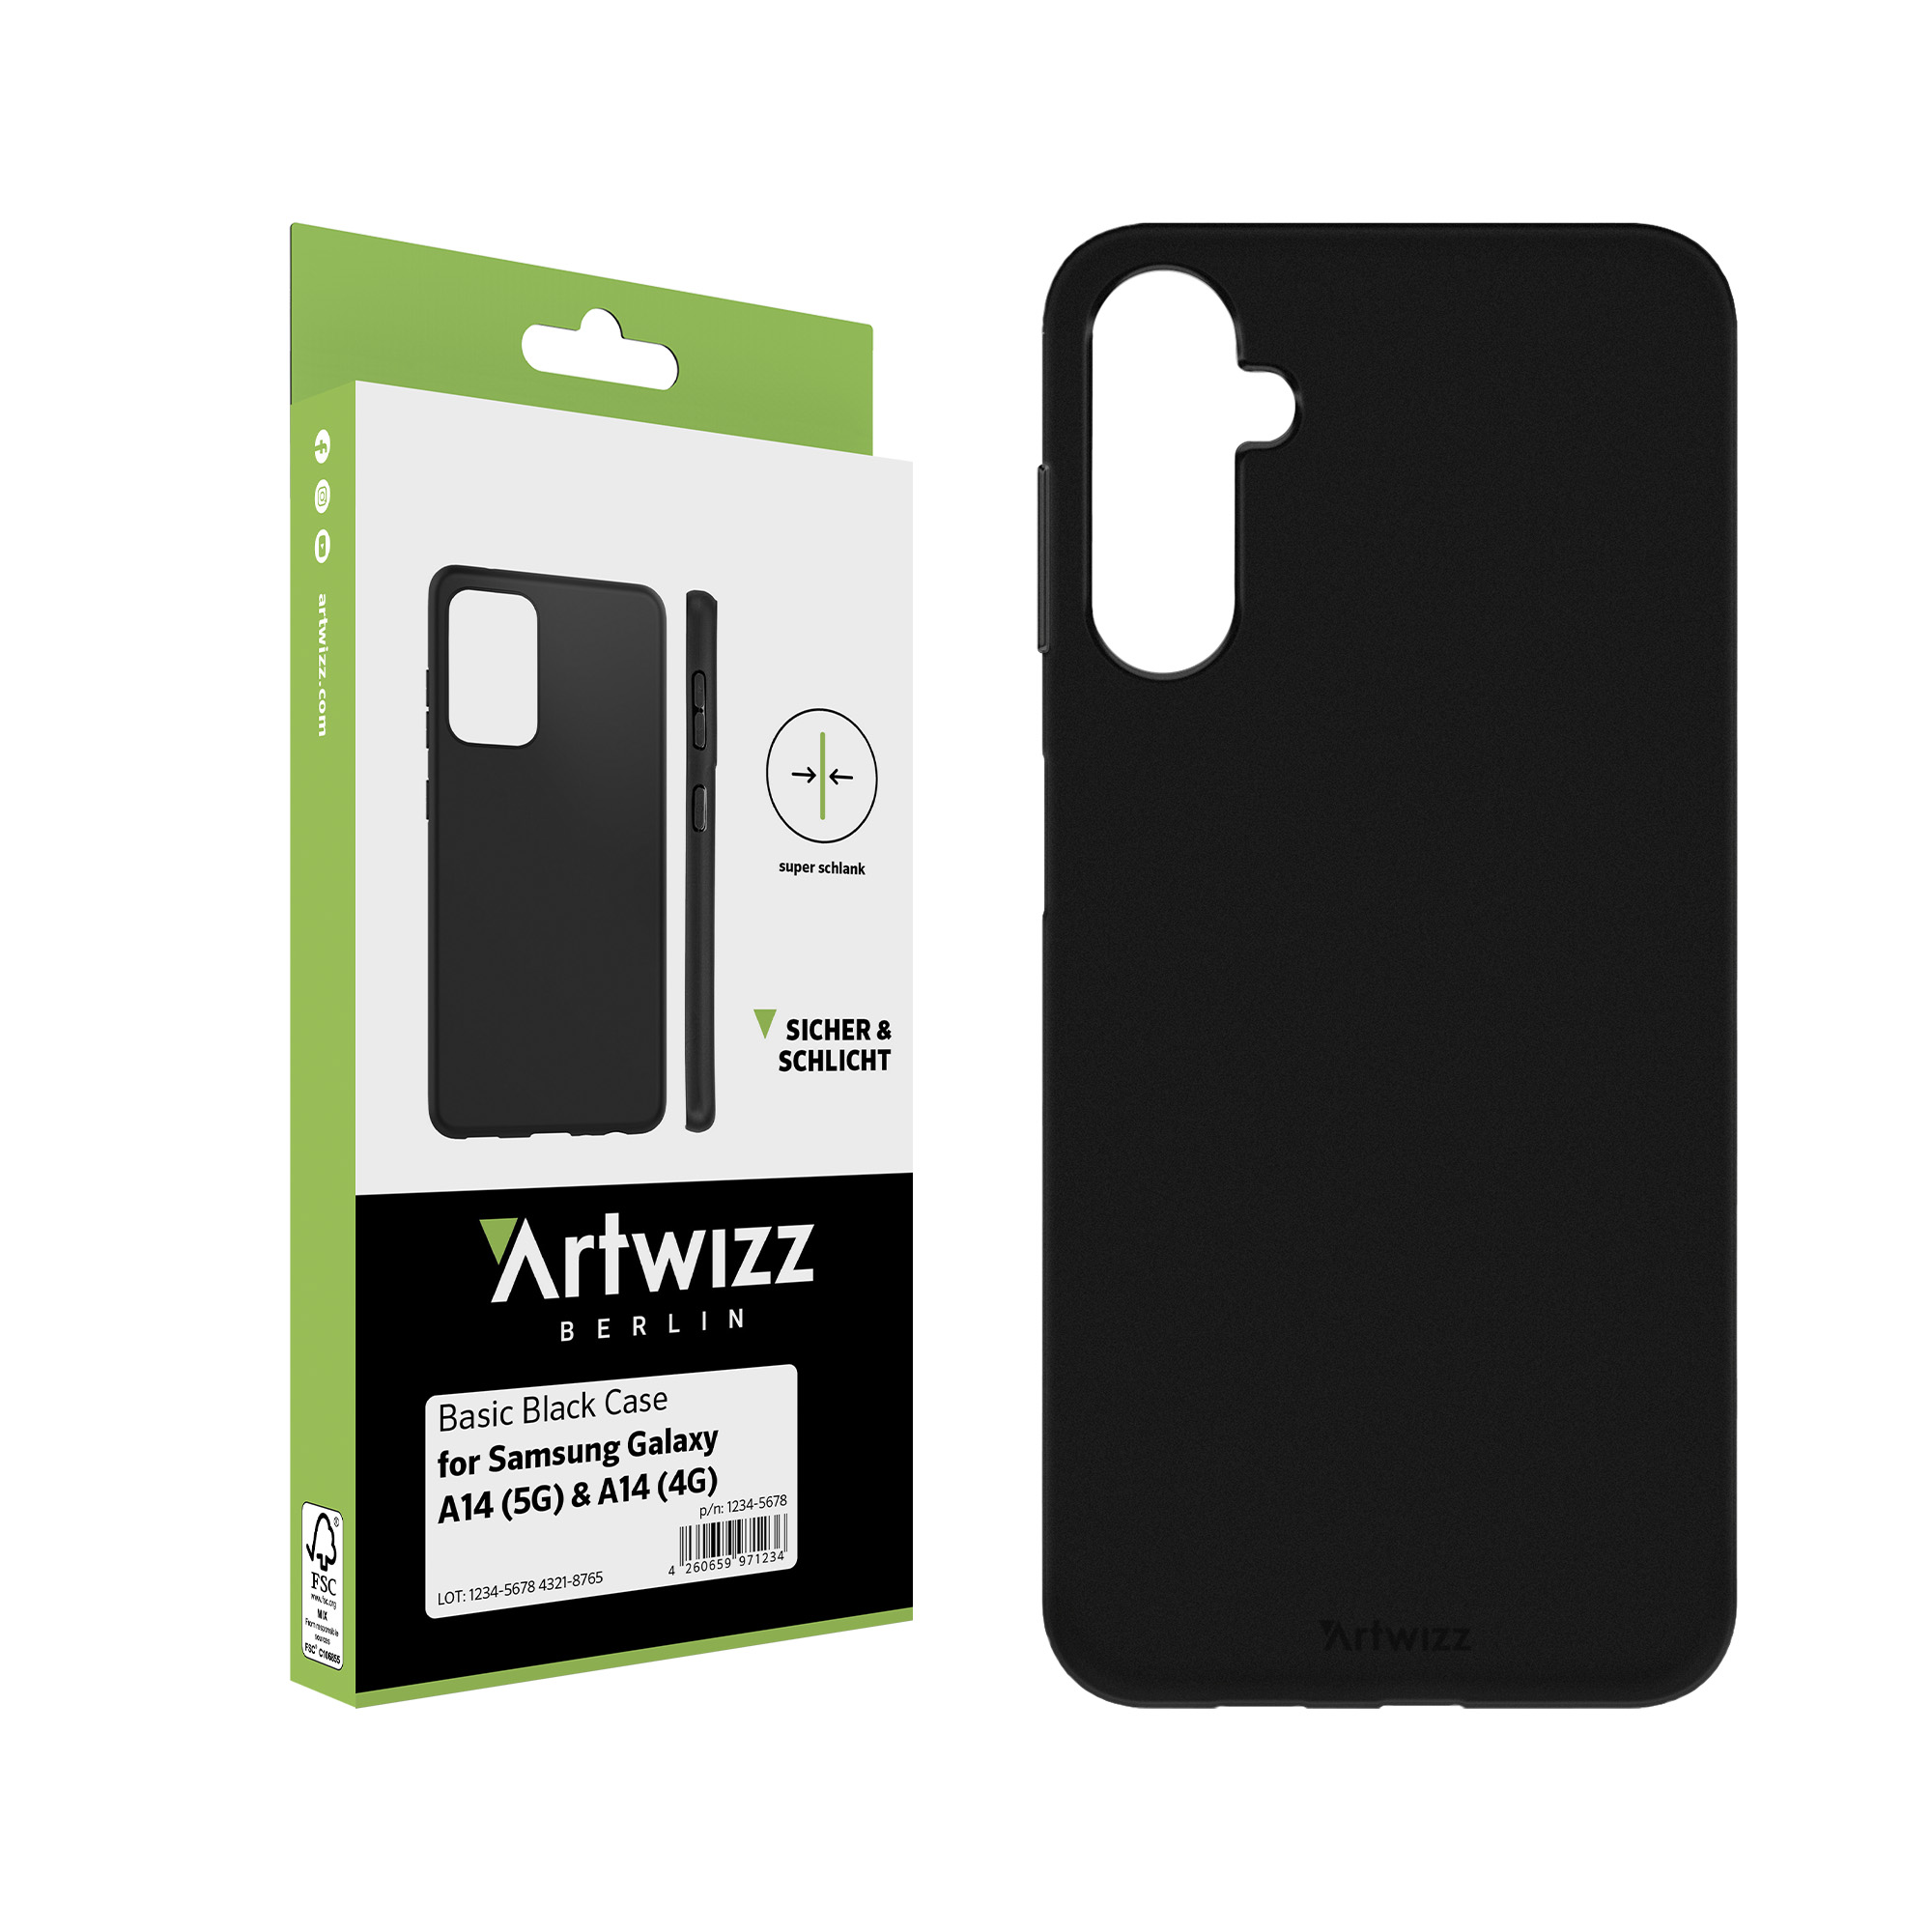 ARTWIZZ Basic für Case A14 Black Backcover, (5G/4G), Galaxy Samsung (5G/4G), Schwarz Galaxy Samsung, A14